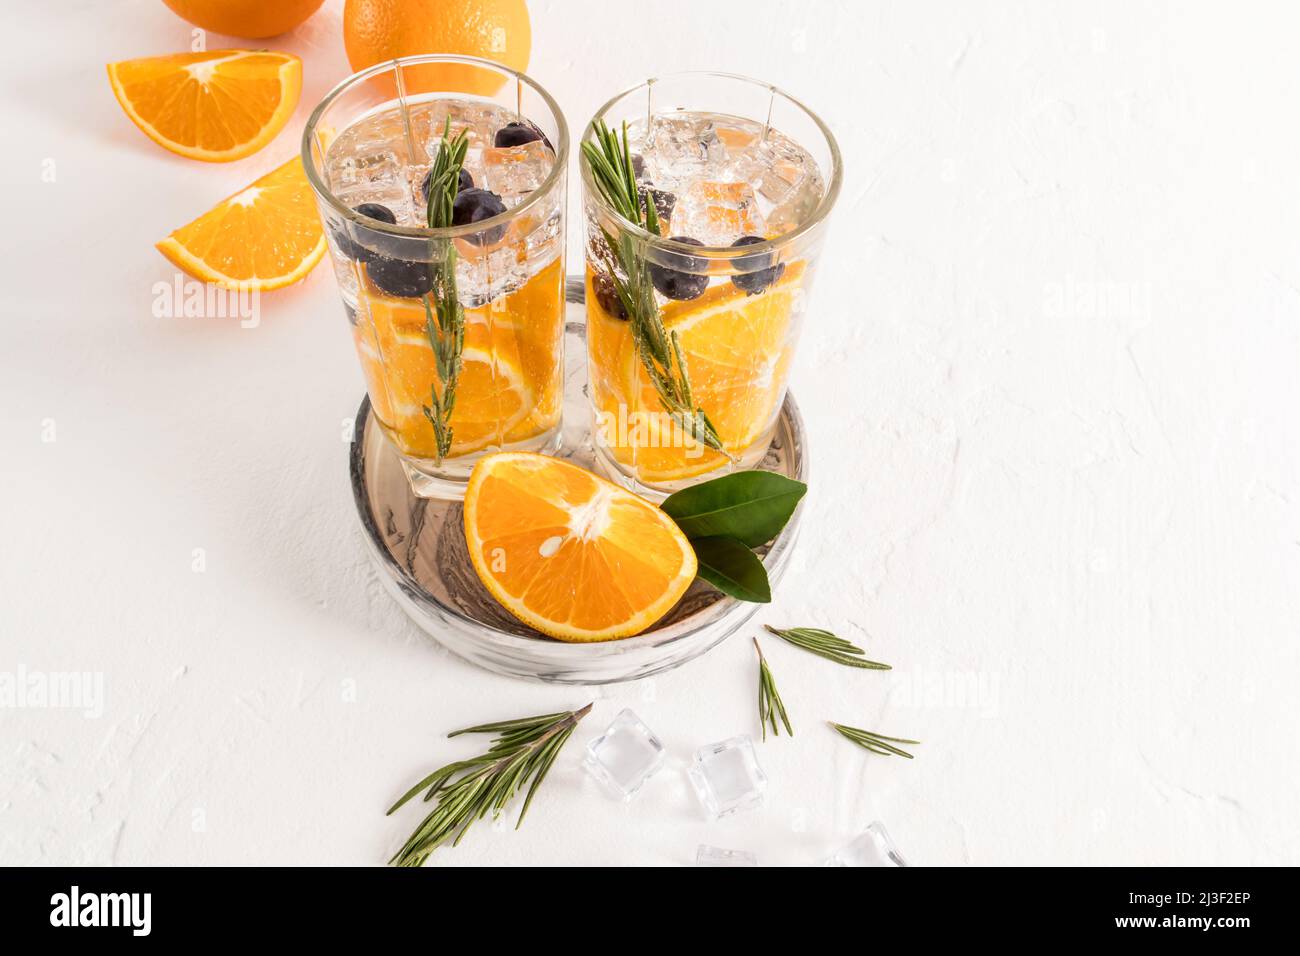 deux verres avec de l'eau vitaminée avec des tranches d'orange, des bleuets, une branche de framboises, des glaçons sur une table blanche. une boisson rafraîchissante Banque D'Images